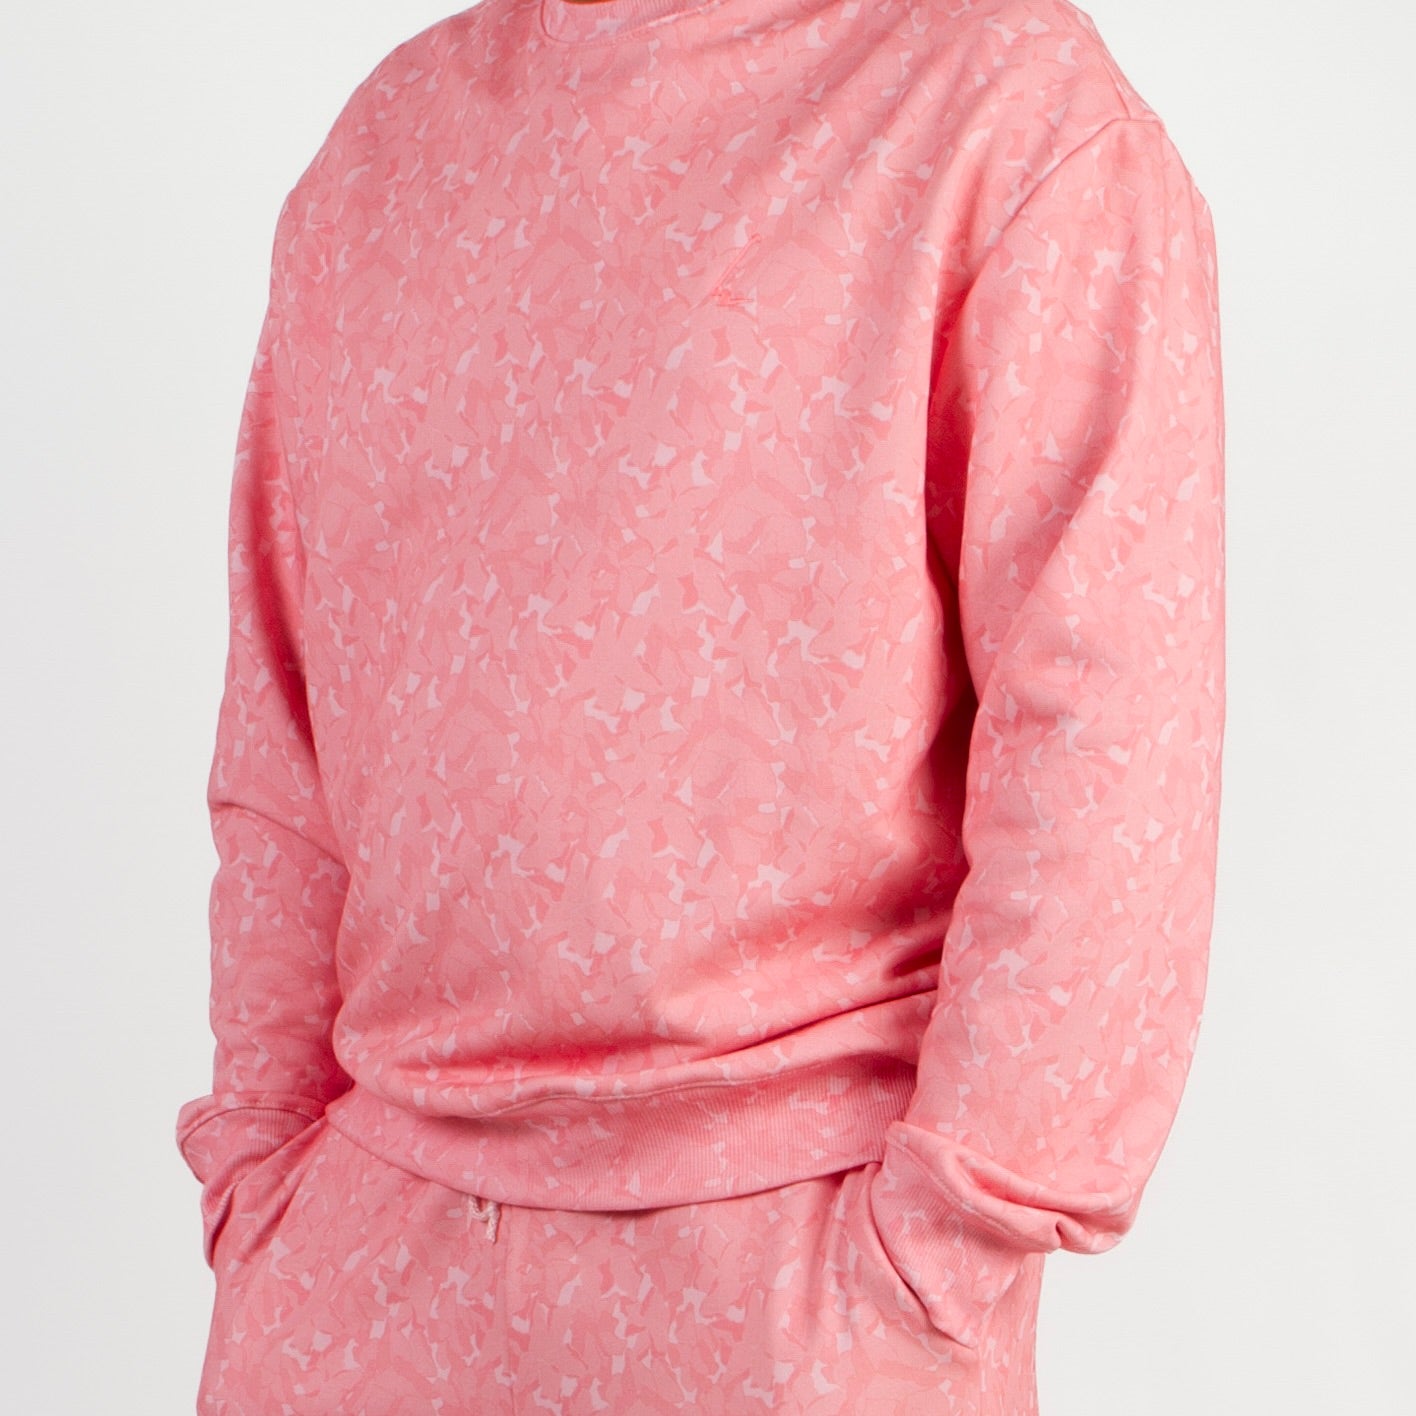 lucewear: homme portant un sweatshirt imprimé mixte rose